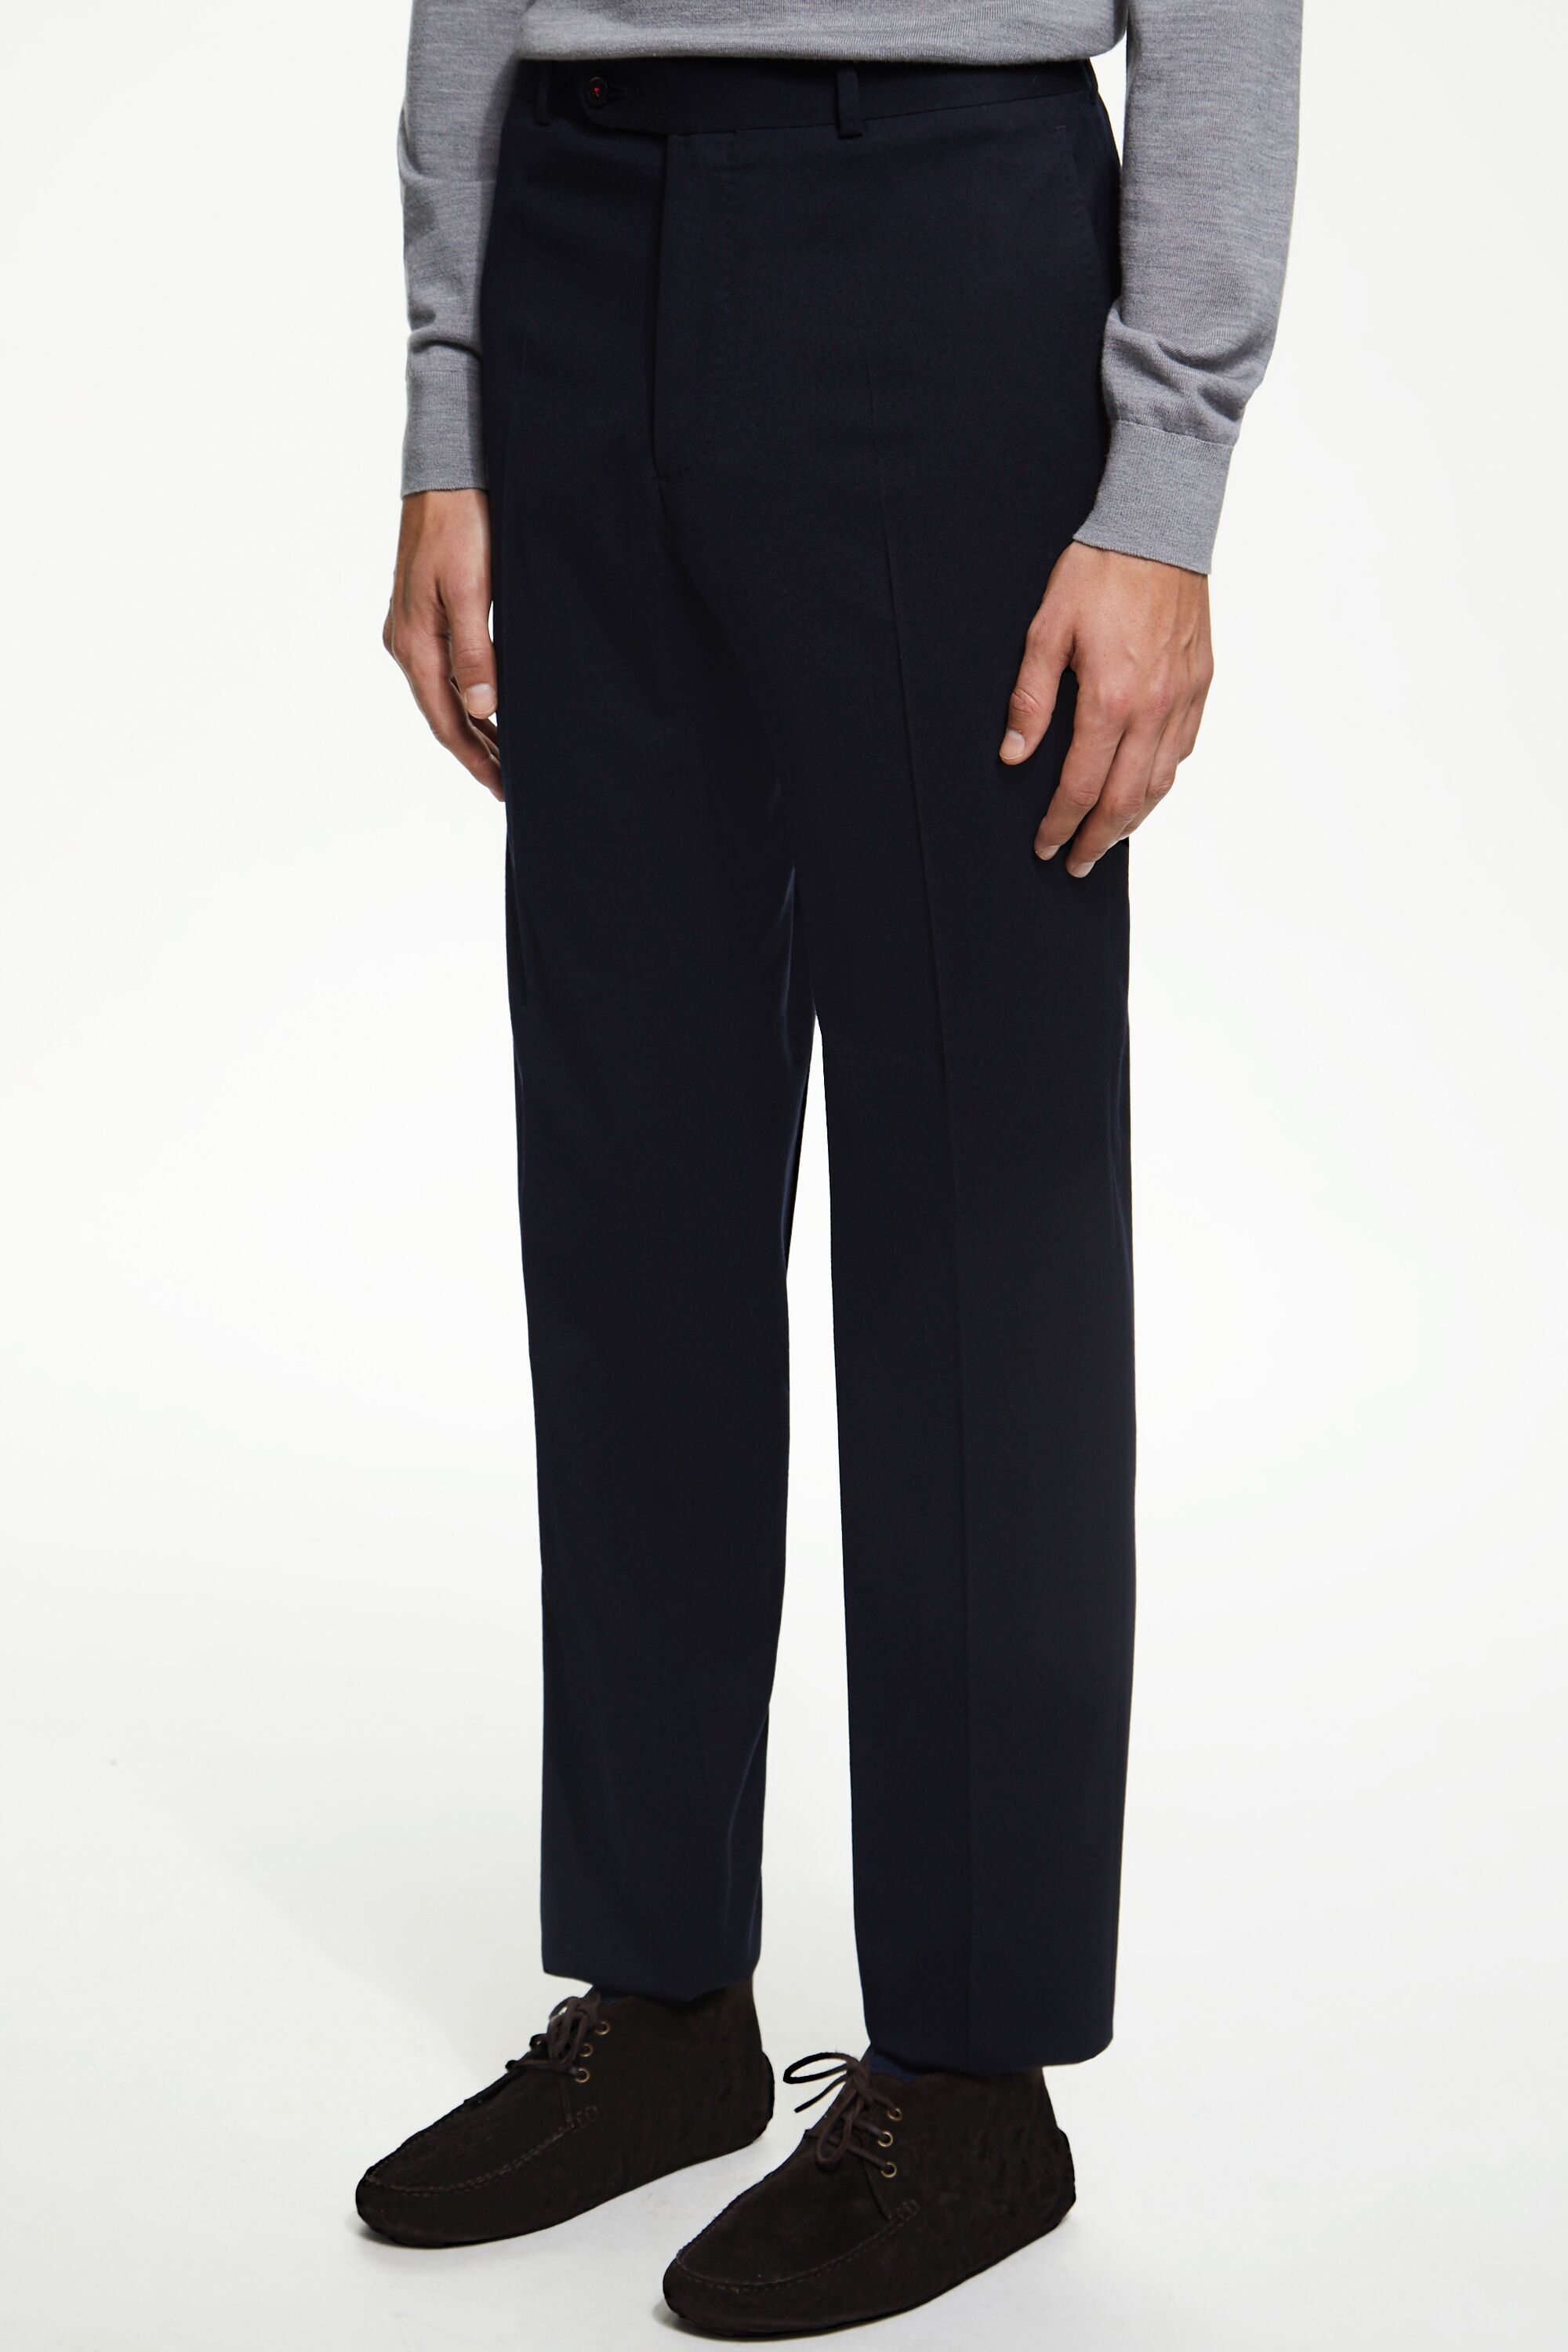 Flannel classic fit suit pants